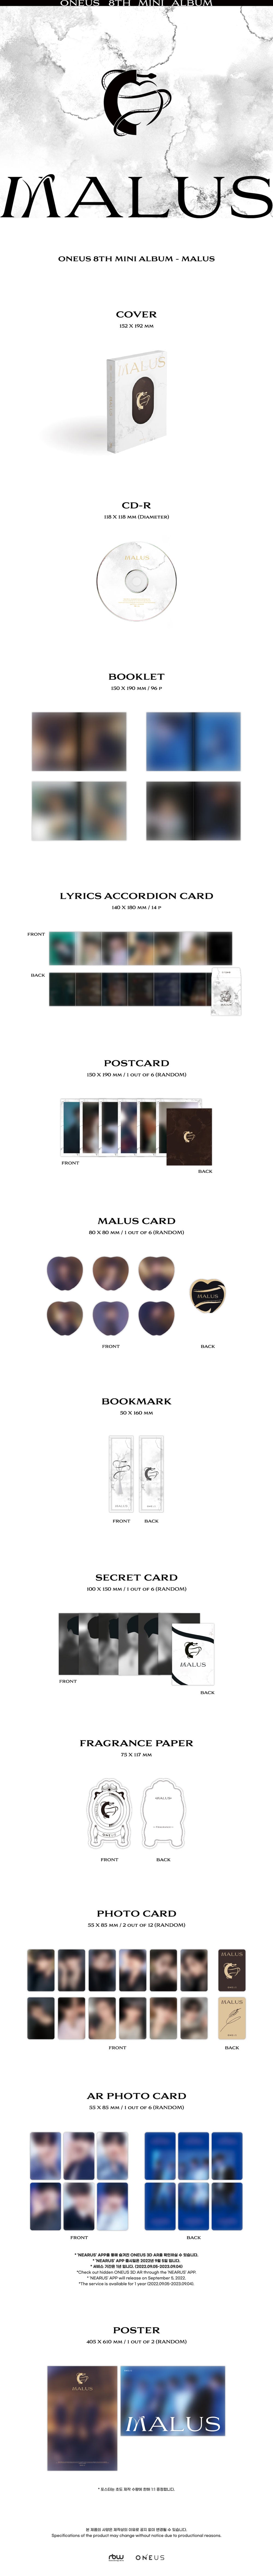 ONEUS - MALUS [8th Mini Album - MAIN Ver.]